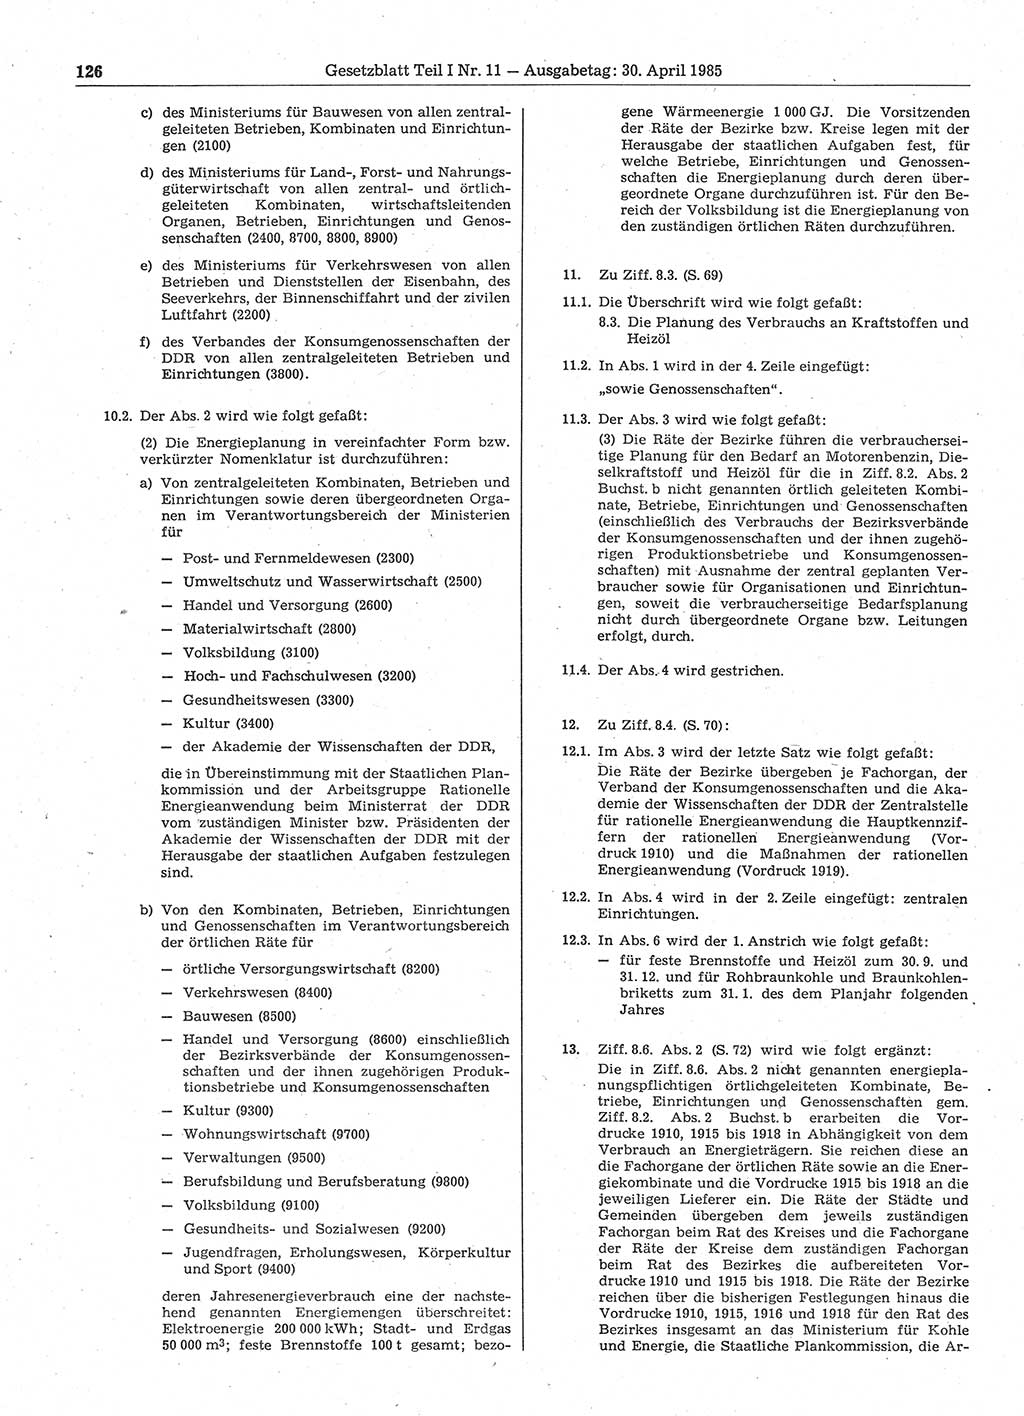 Gesetzblatt (GBl.) der Deutschen Demokratischen Republik (DDR) Teil Ⅰ 1985, Seite 126 (GBl. DDR Ⅰ 1985, S. 126)